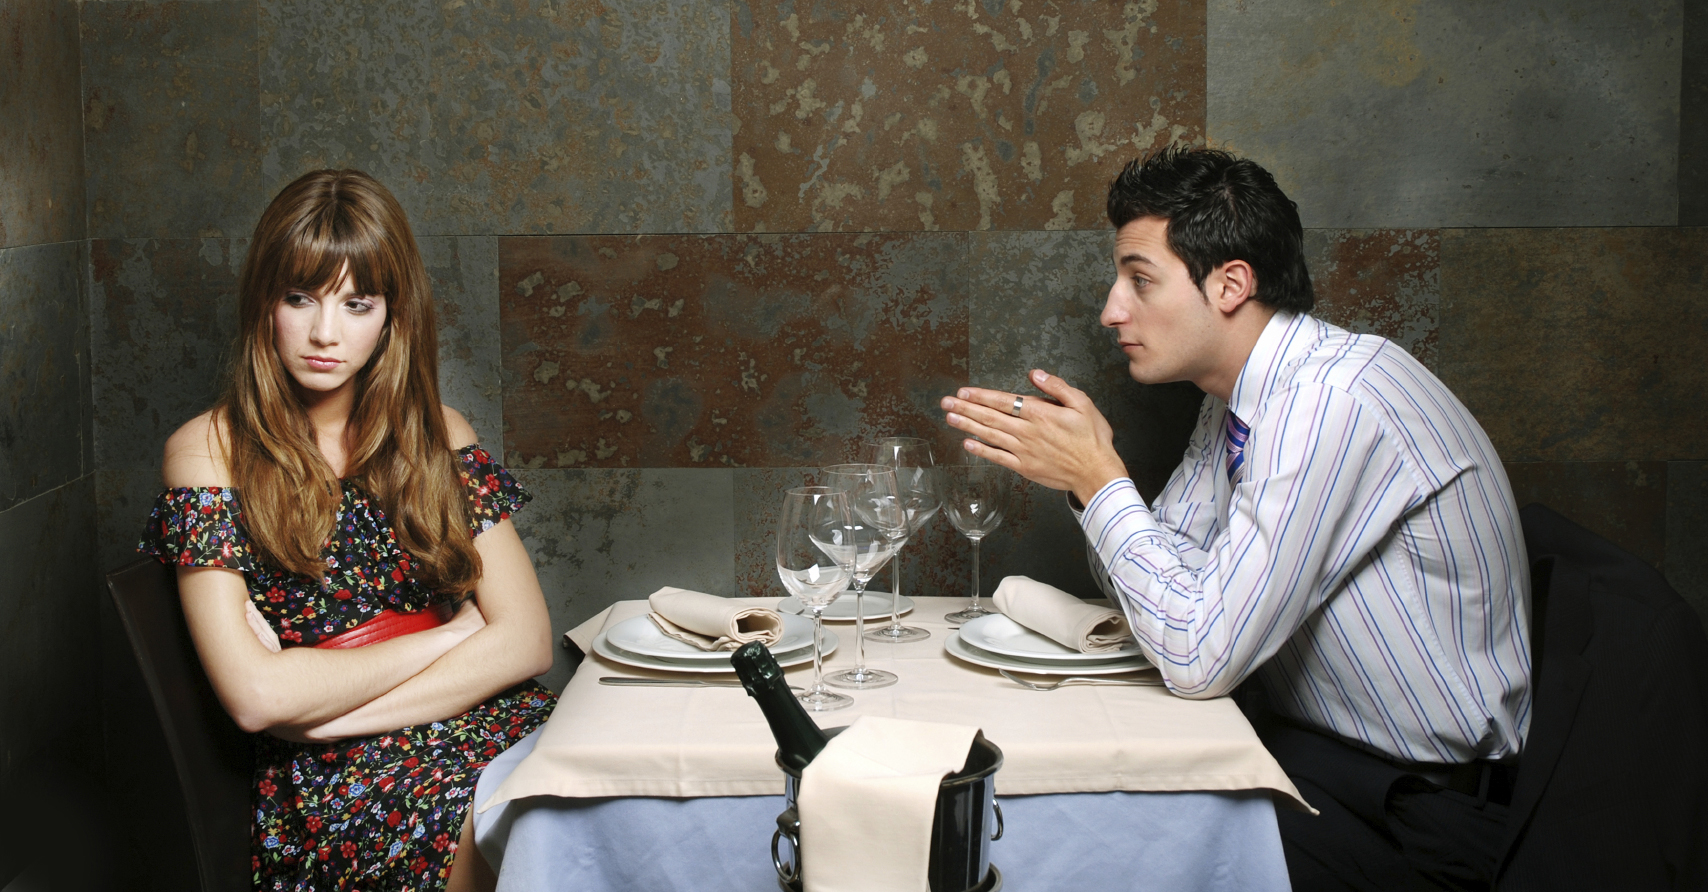 mit jelent a beszélgetés a randevú?